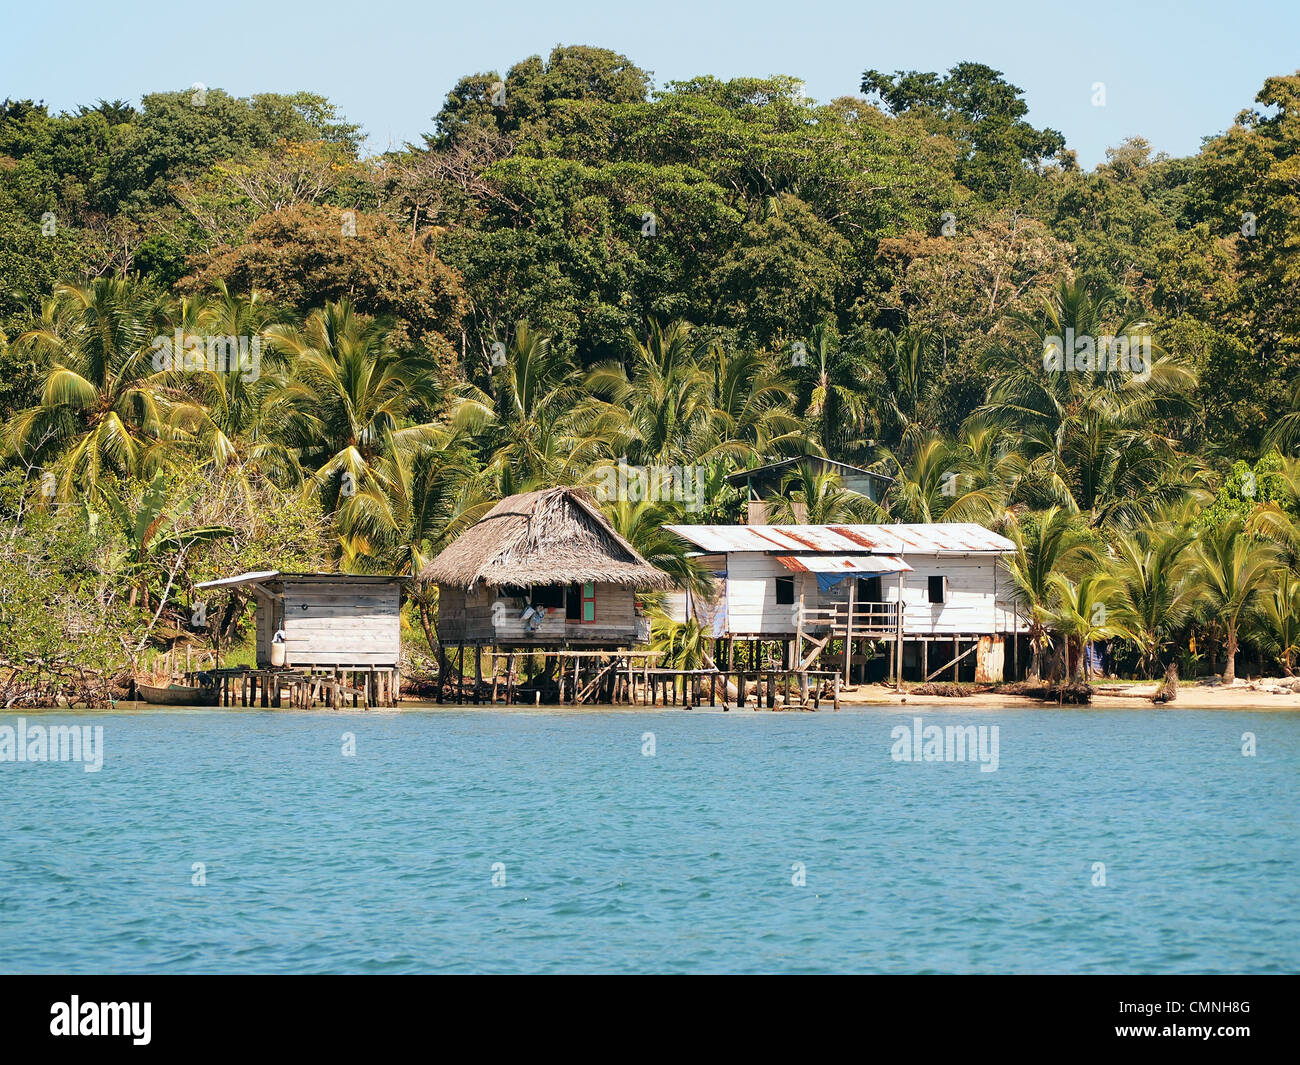 Rústicas casas sobre pilotes a la orilla del mar con una exuberante vegetación tropical en el fondo, Bocas del Toro, Panamá, América Central Foto de stock